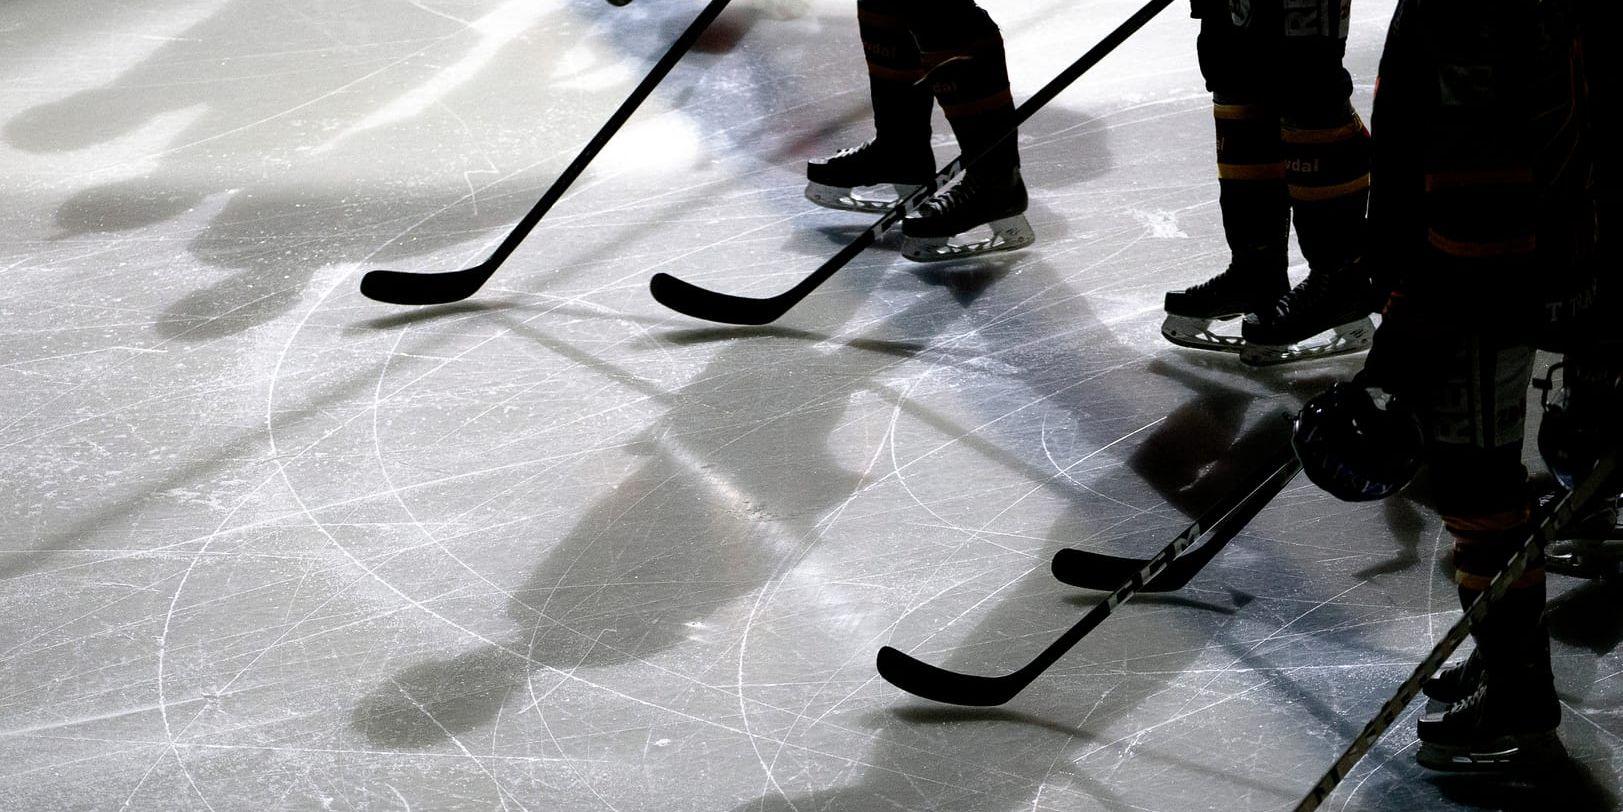 En stor svensk ishockeyprofil med meriter från landslaget anhölls under natten till tisdagen misstänkt för våldsbrott mot en närstående, rapporterar Aftonbladet.